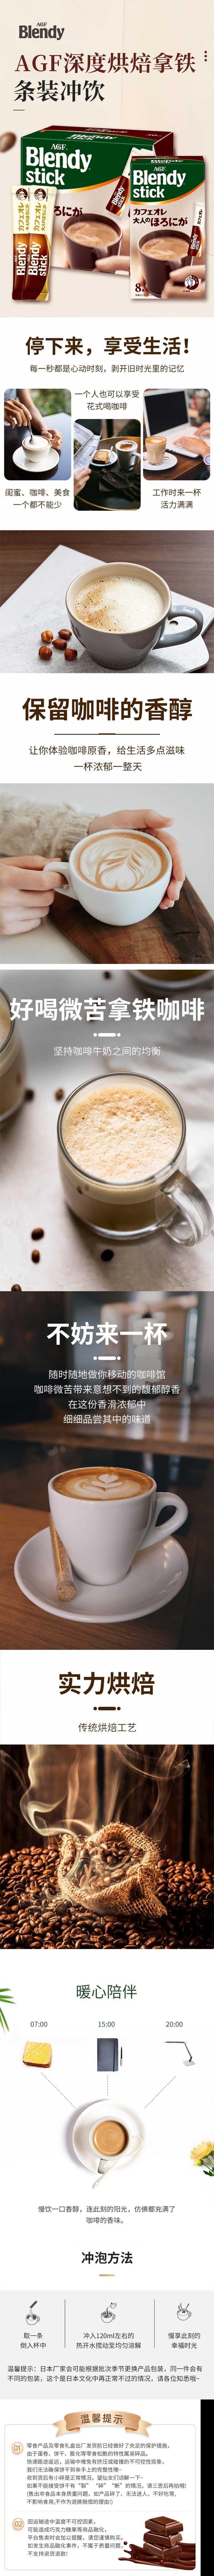 【日本直郵】AGF blendy stick棒狀深度烘焙牛奶咖啡 27枚